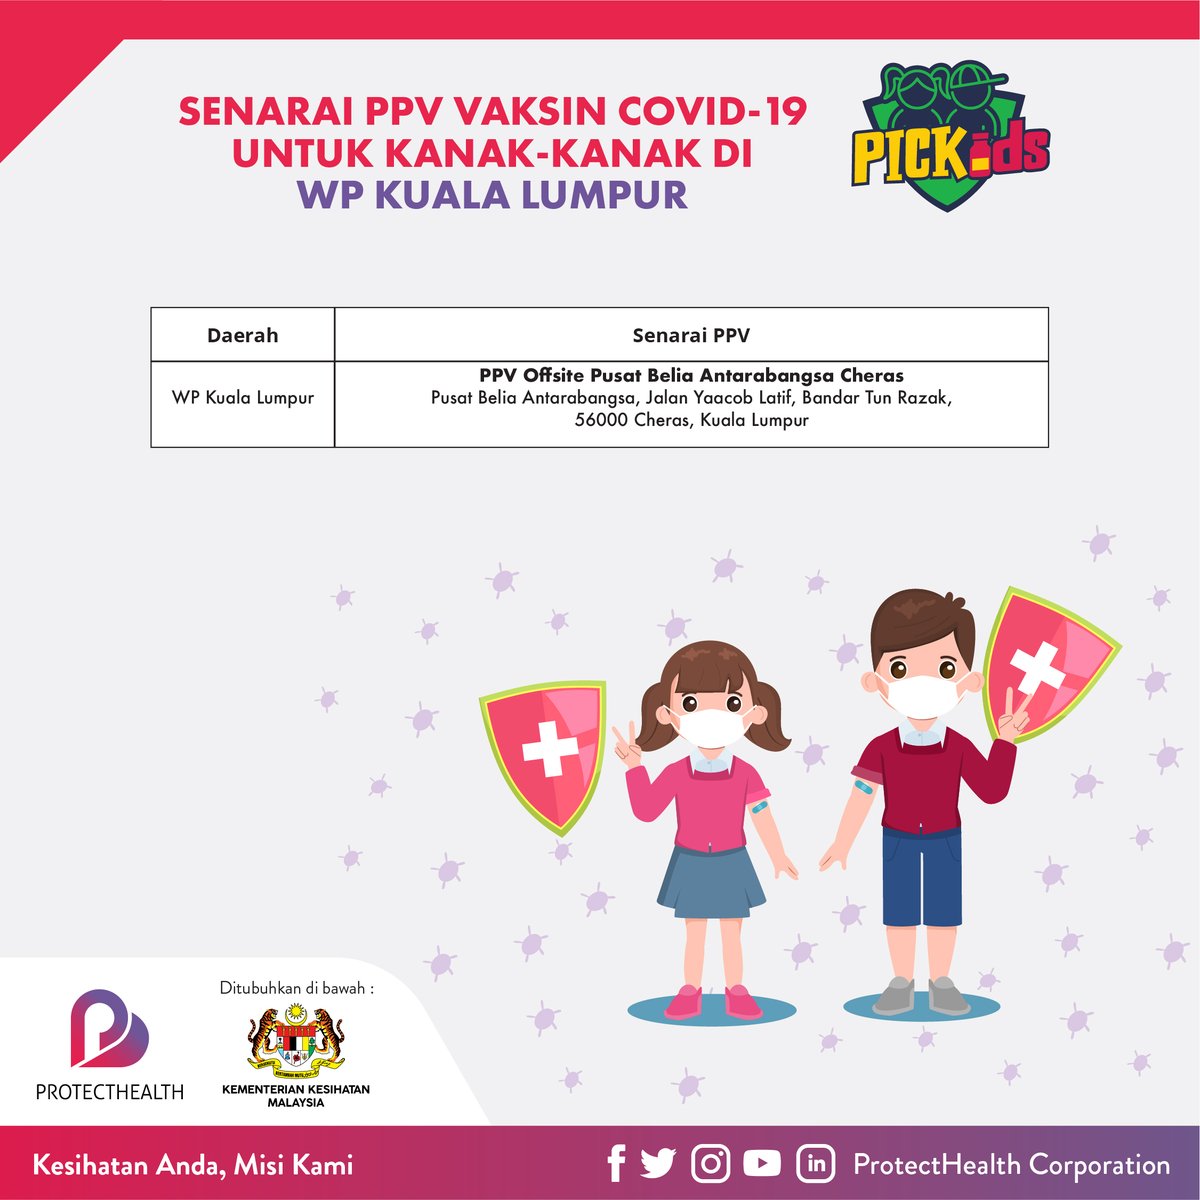 Senarai-senarai PPV #PICKids yang masih beroperasi untuk negeri Selangor dan W.P. Kuala Lumpur. Lindung Diri, Lindung Kanak-Kanak, Lindung Semua.